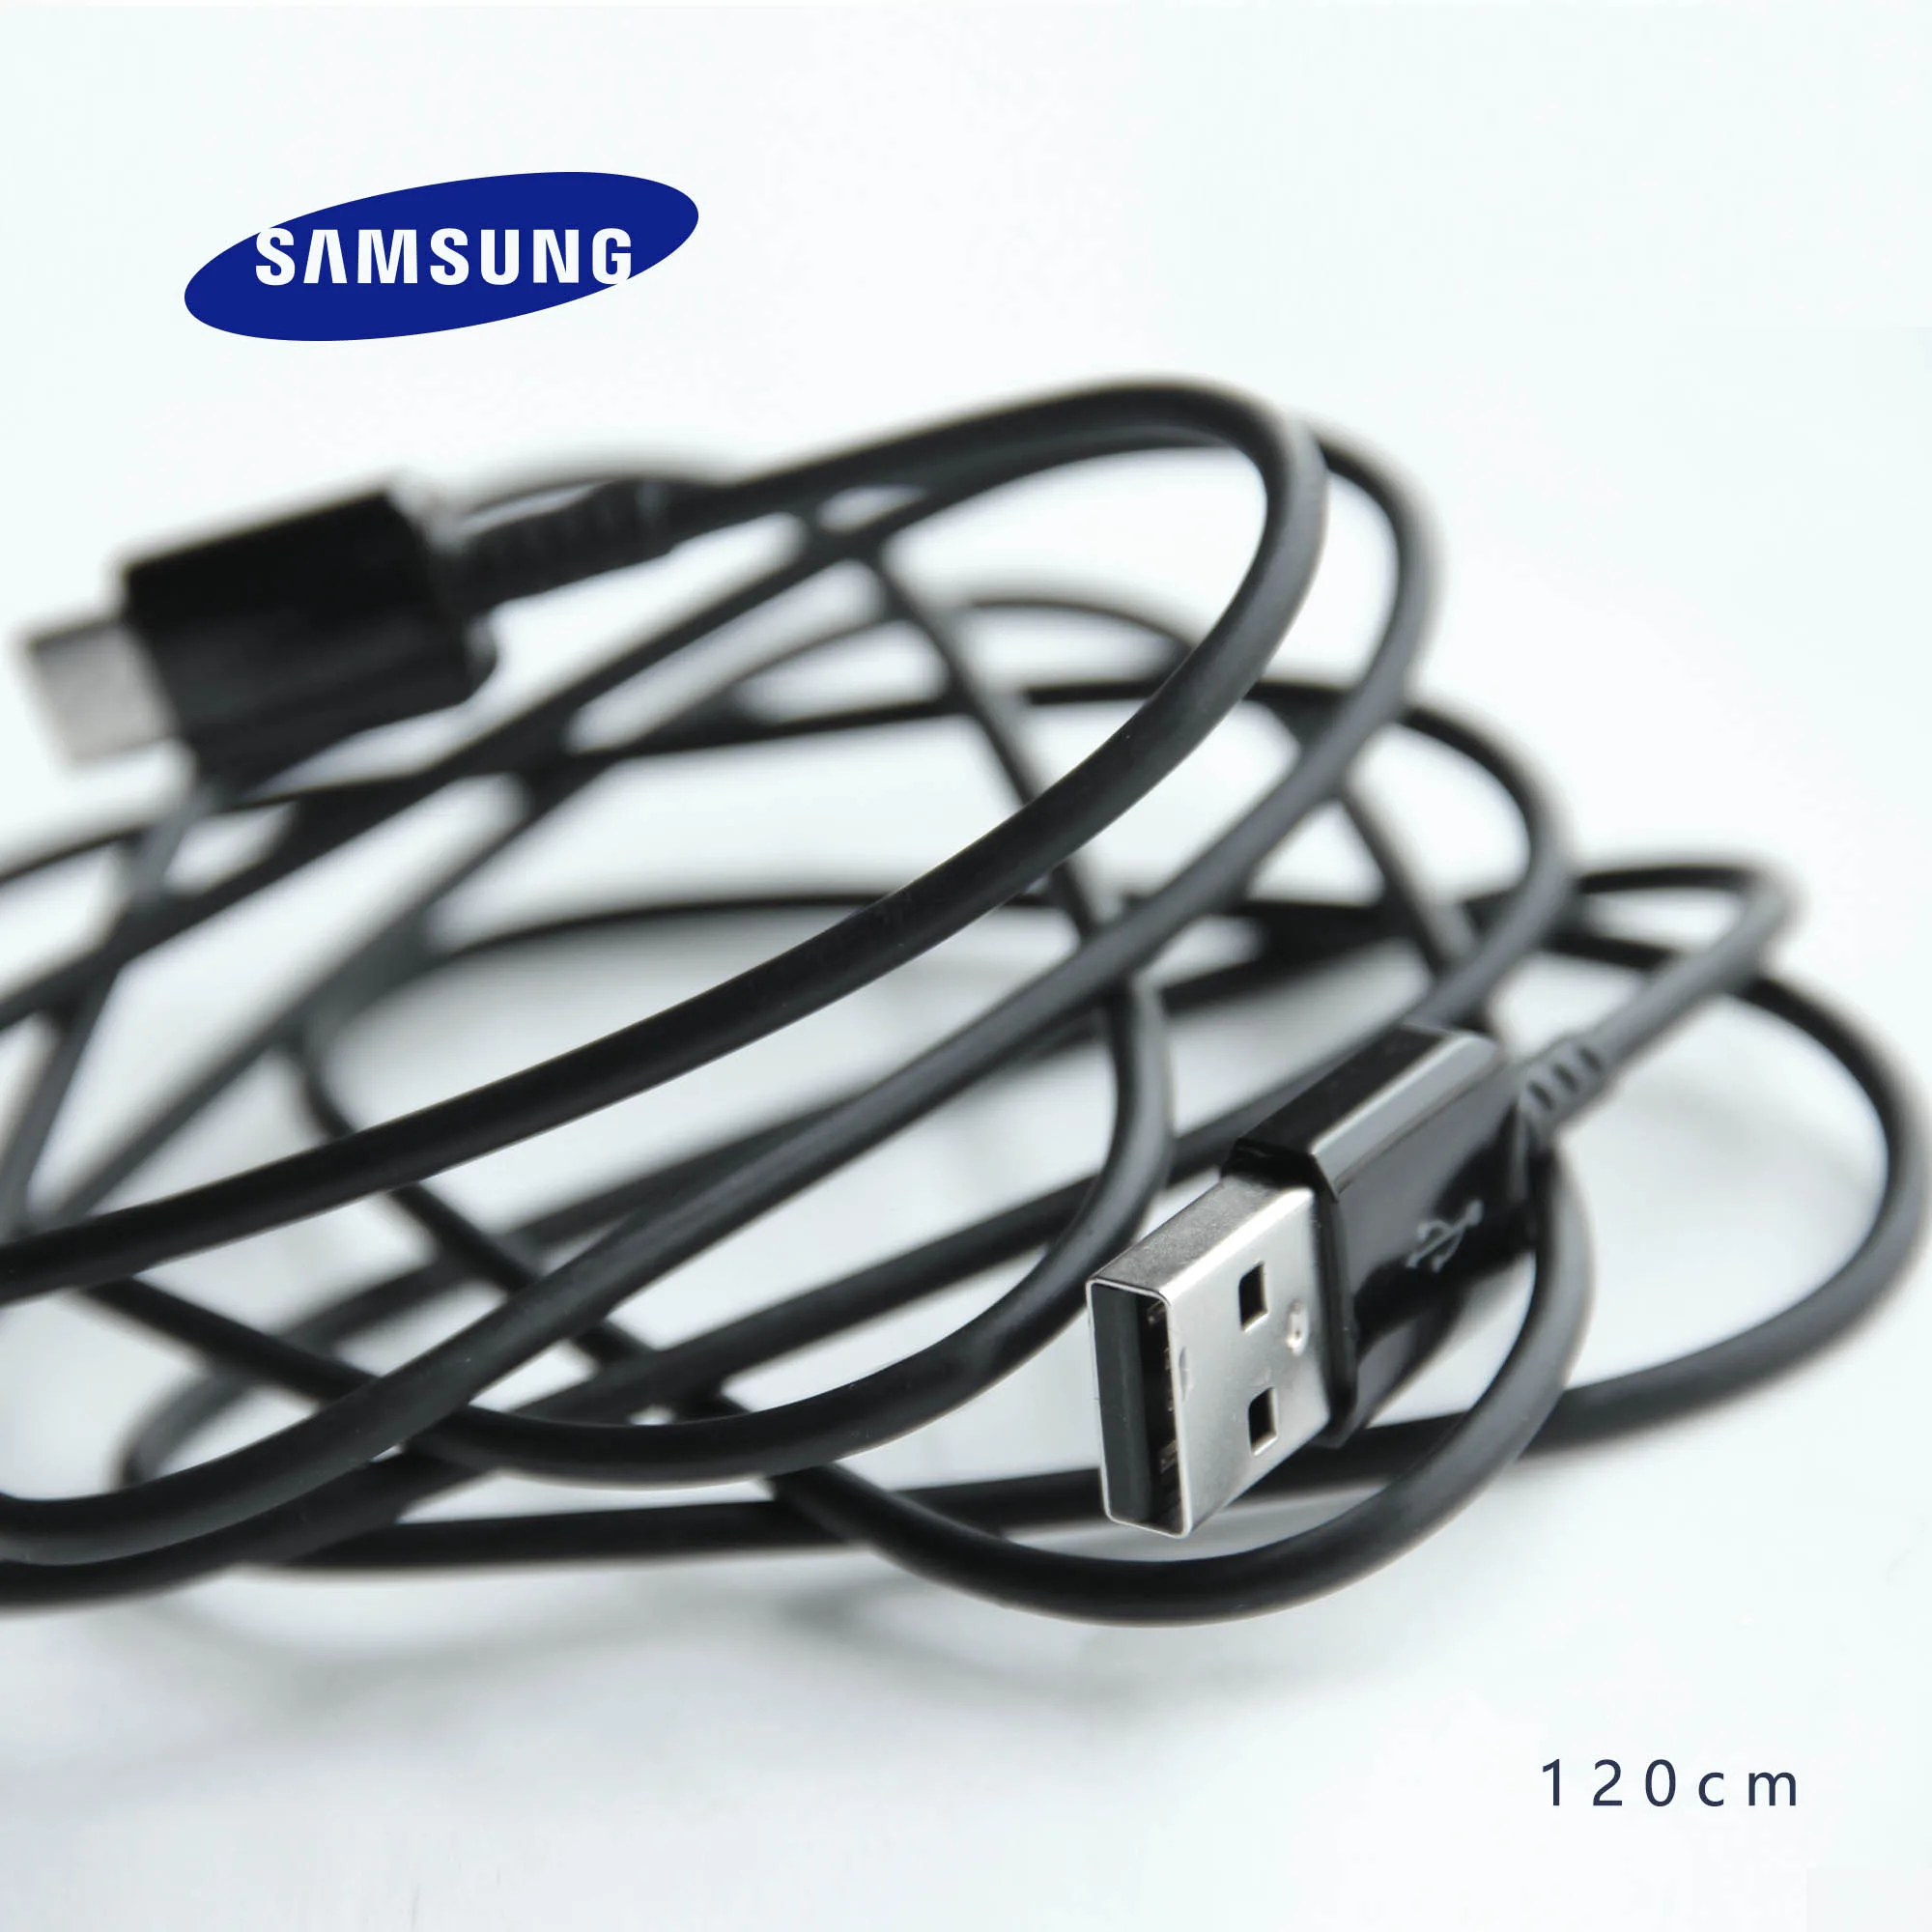 1,2 м Тип usb C быстрый заряд кабеля для передачи данных для Samsung Galaxy S8 S9 плюс S10 A5 A7 Note 8 - Цвет: Черный